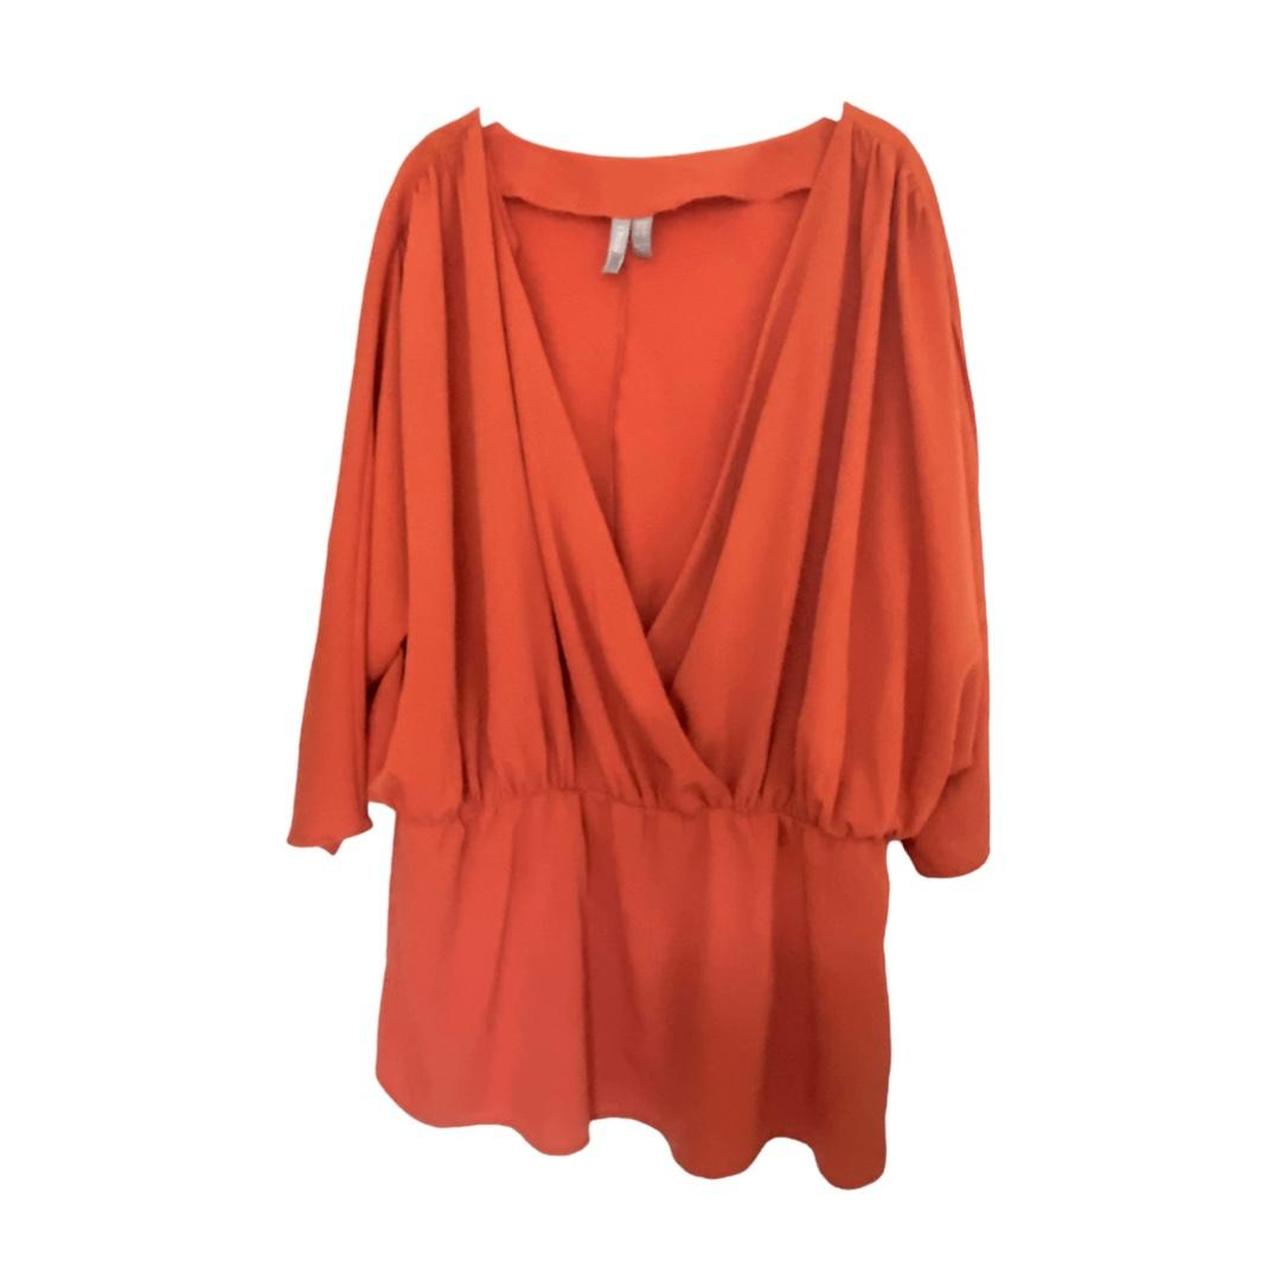 ASOS Women's Orange Blouse (3)